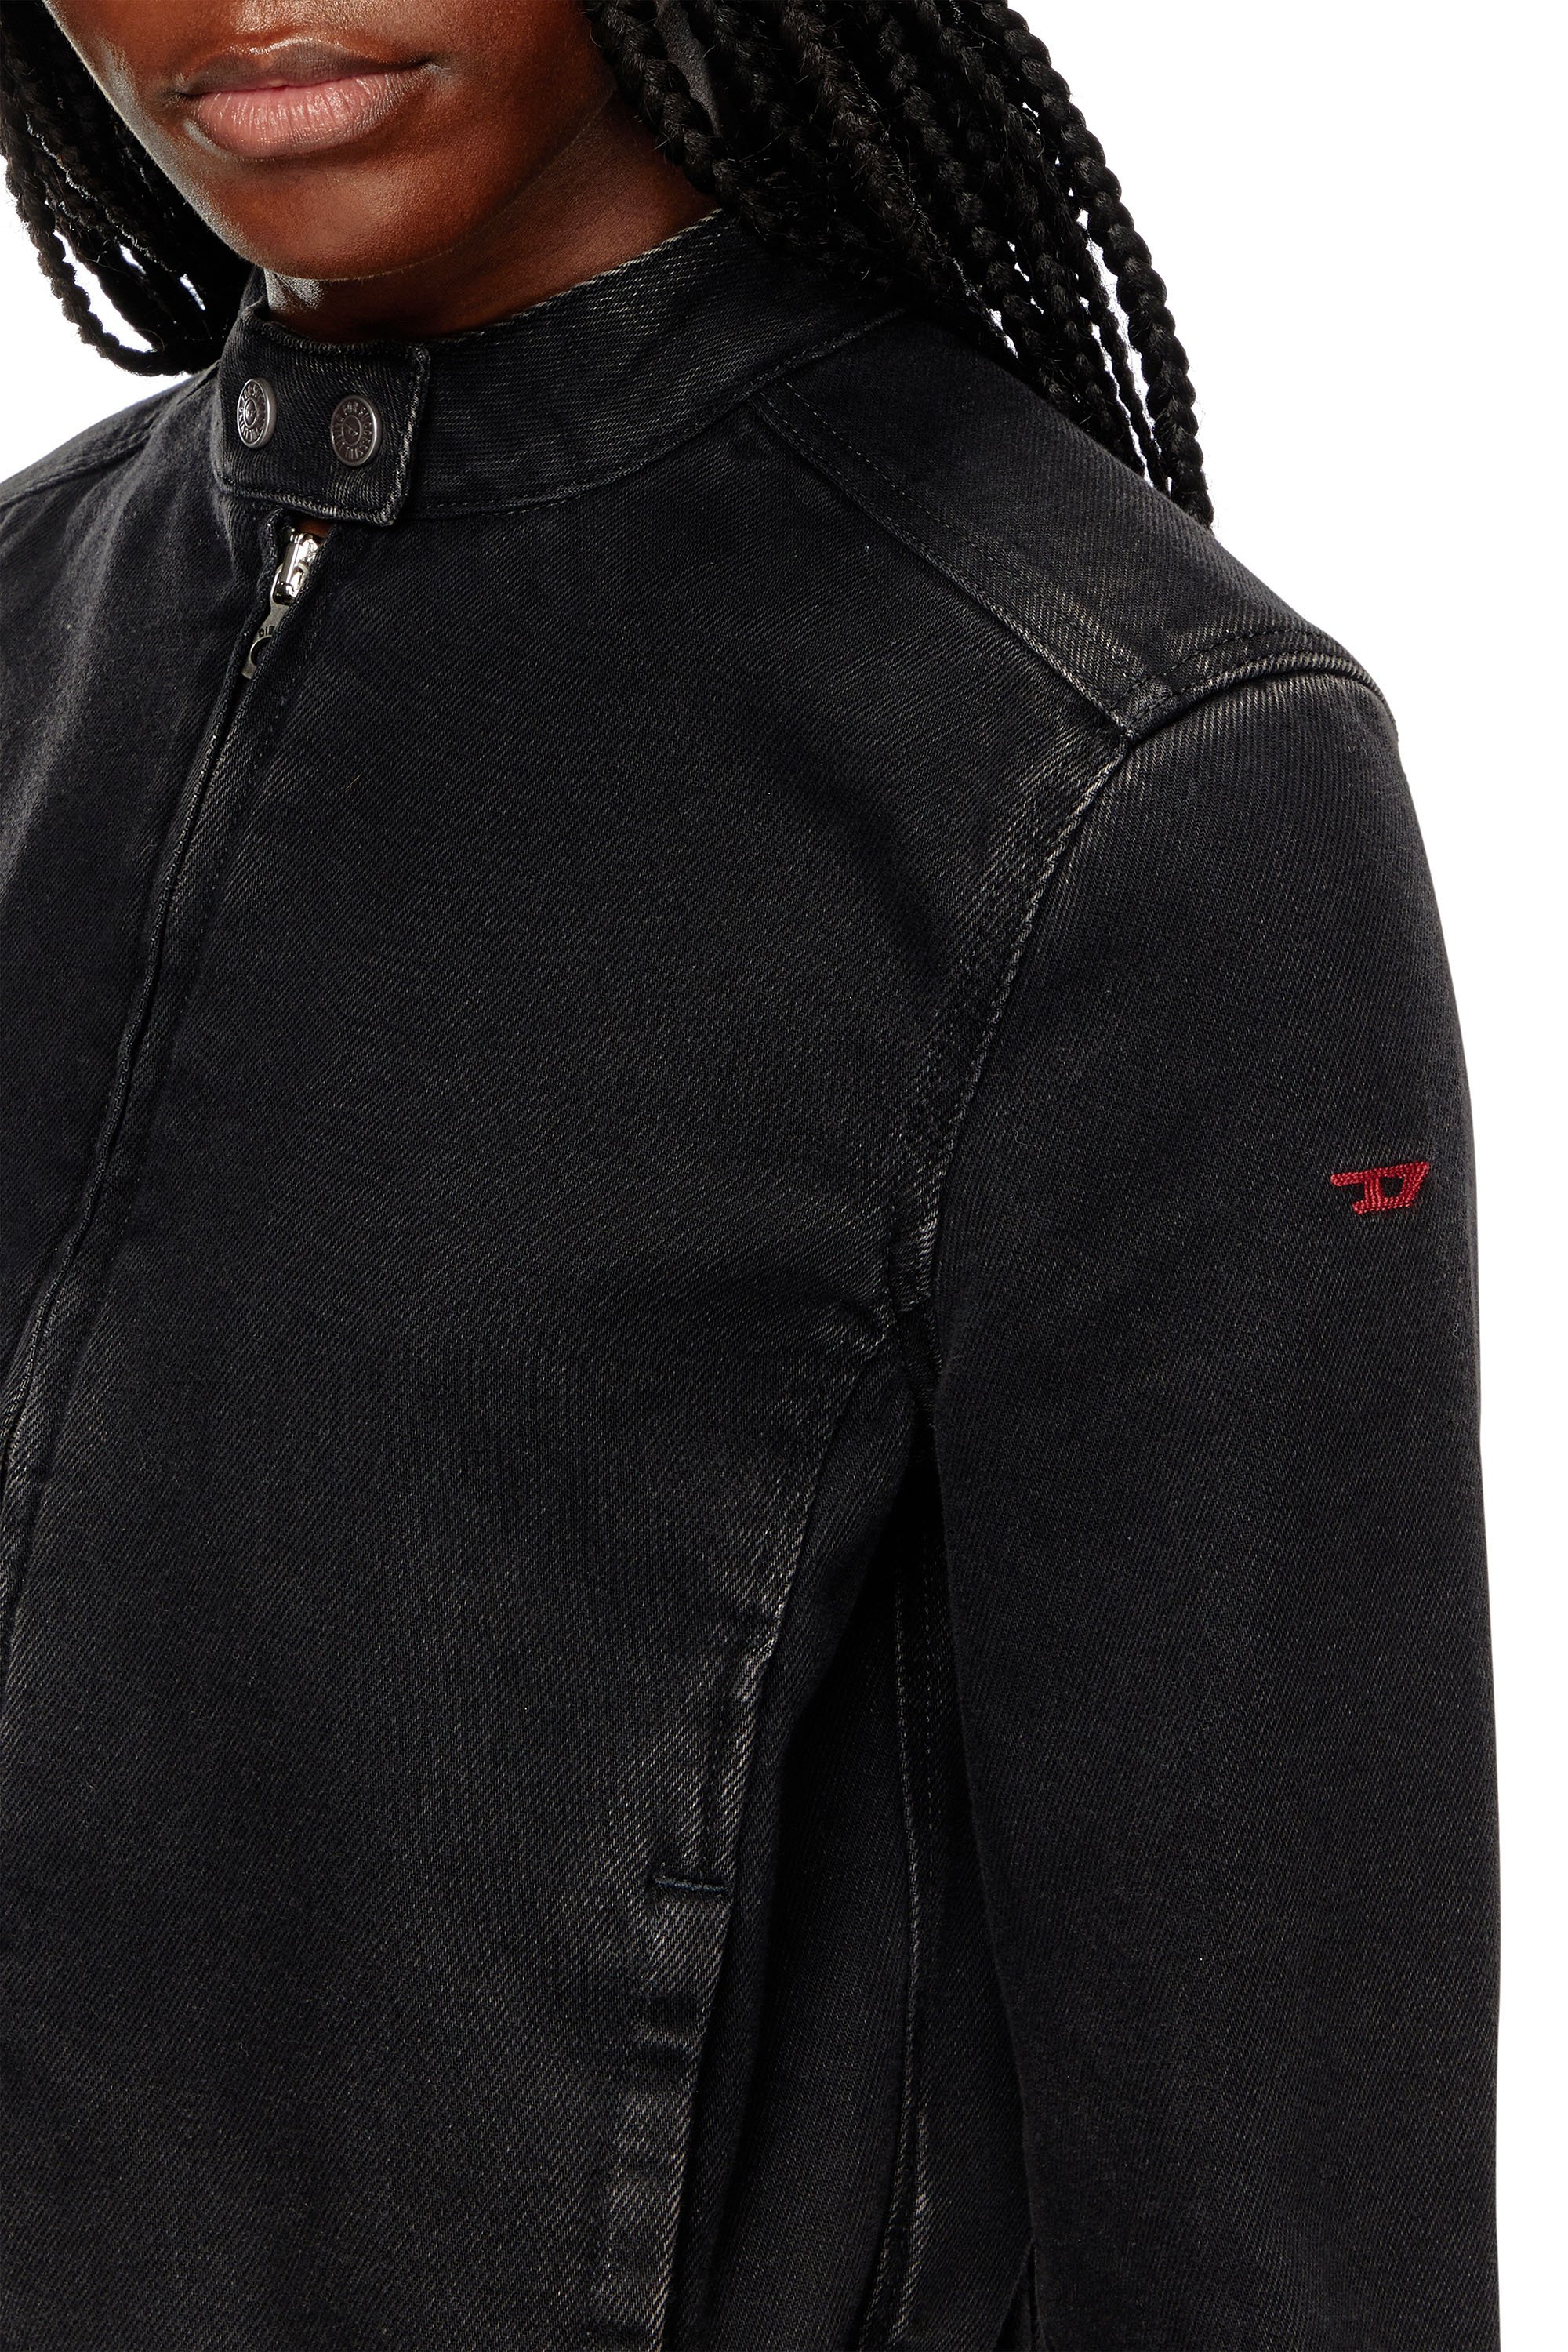 Diesel - DE-MORNIN, Woman Moto jacket in denim in Black - Image 5